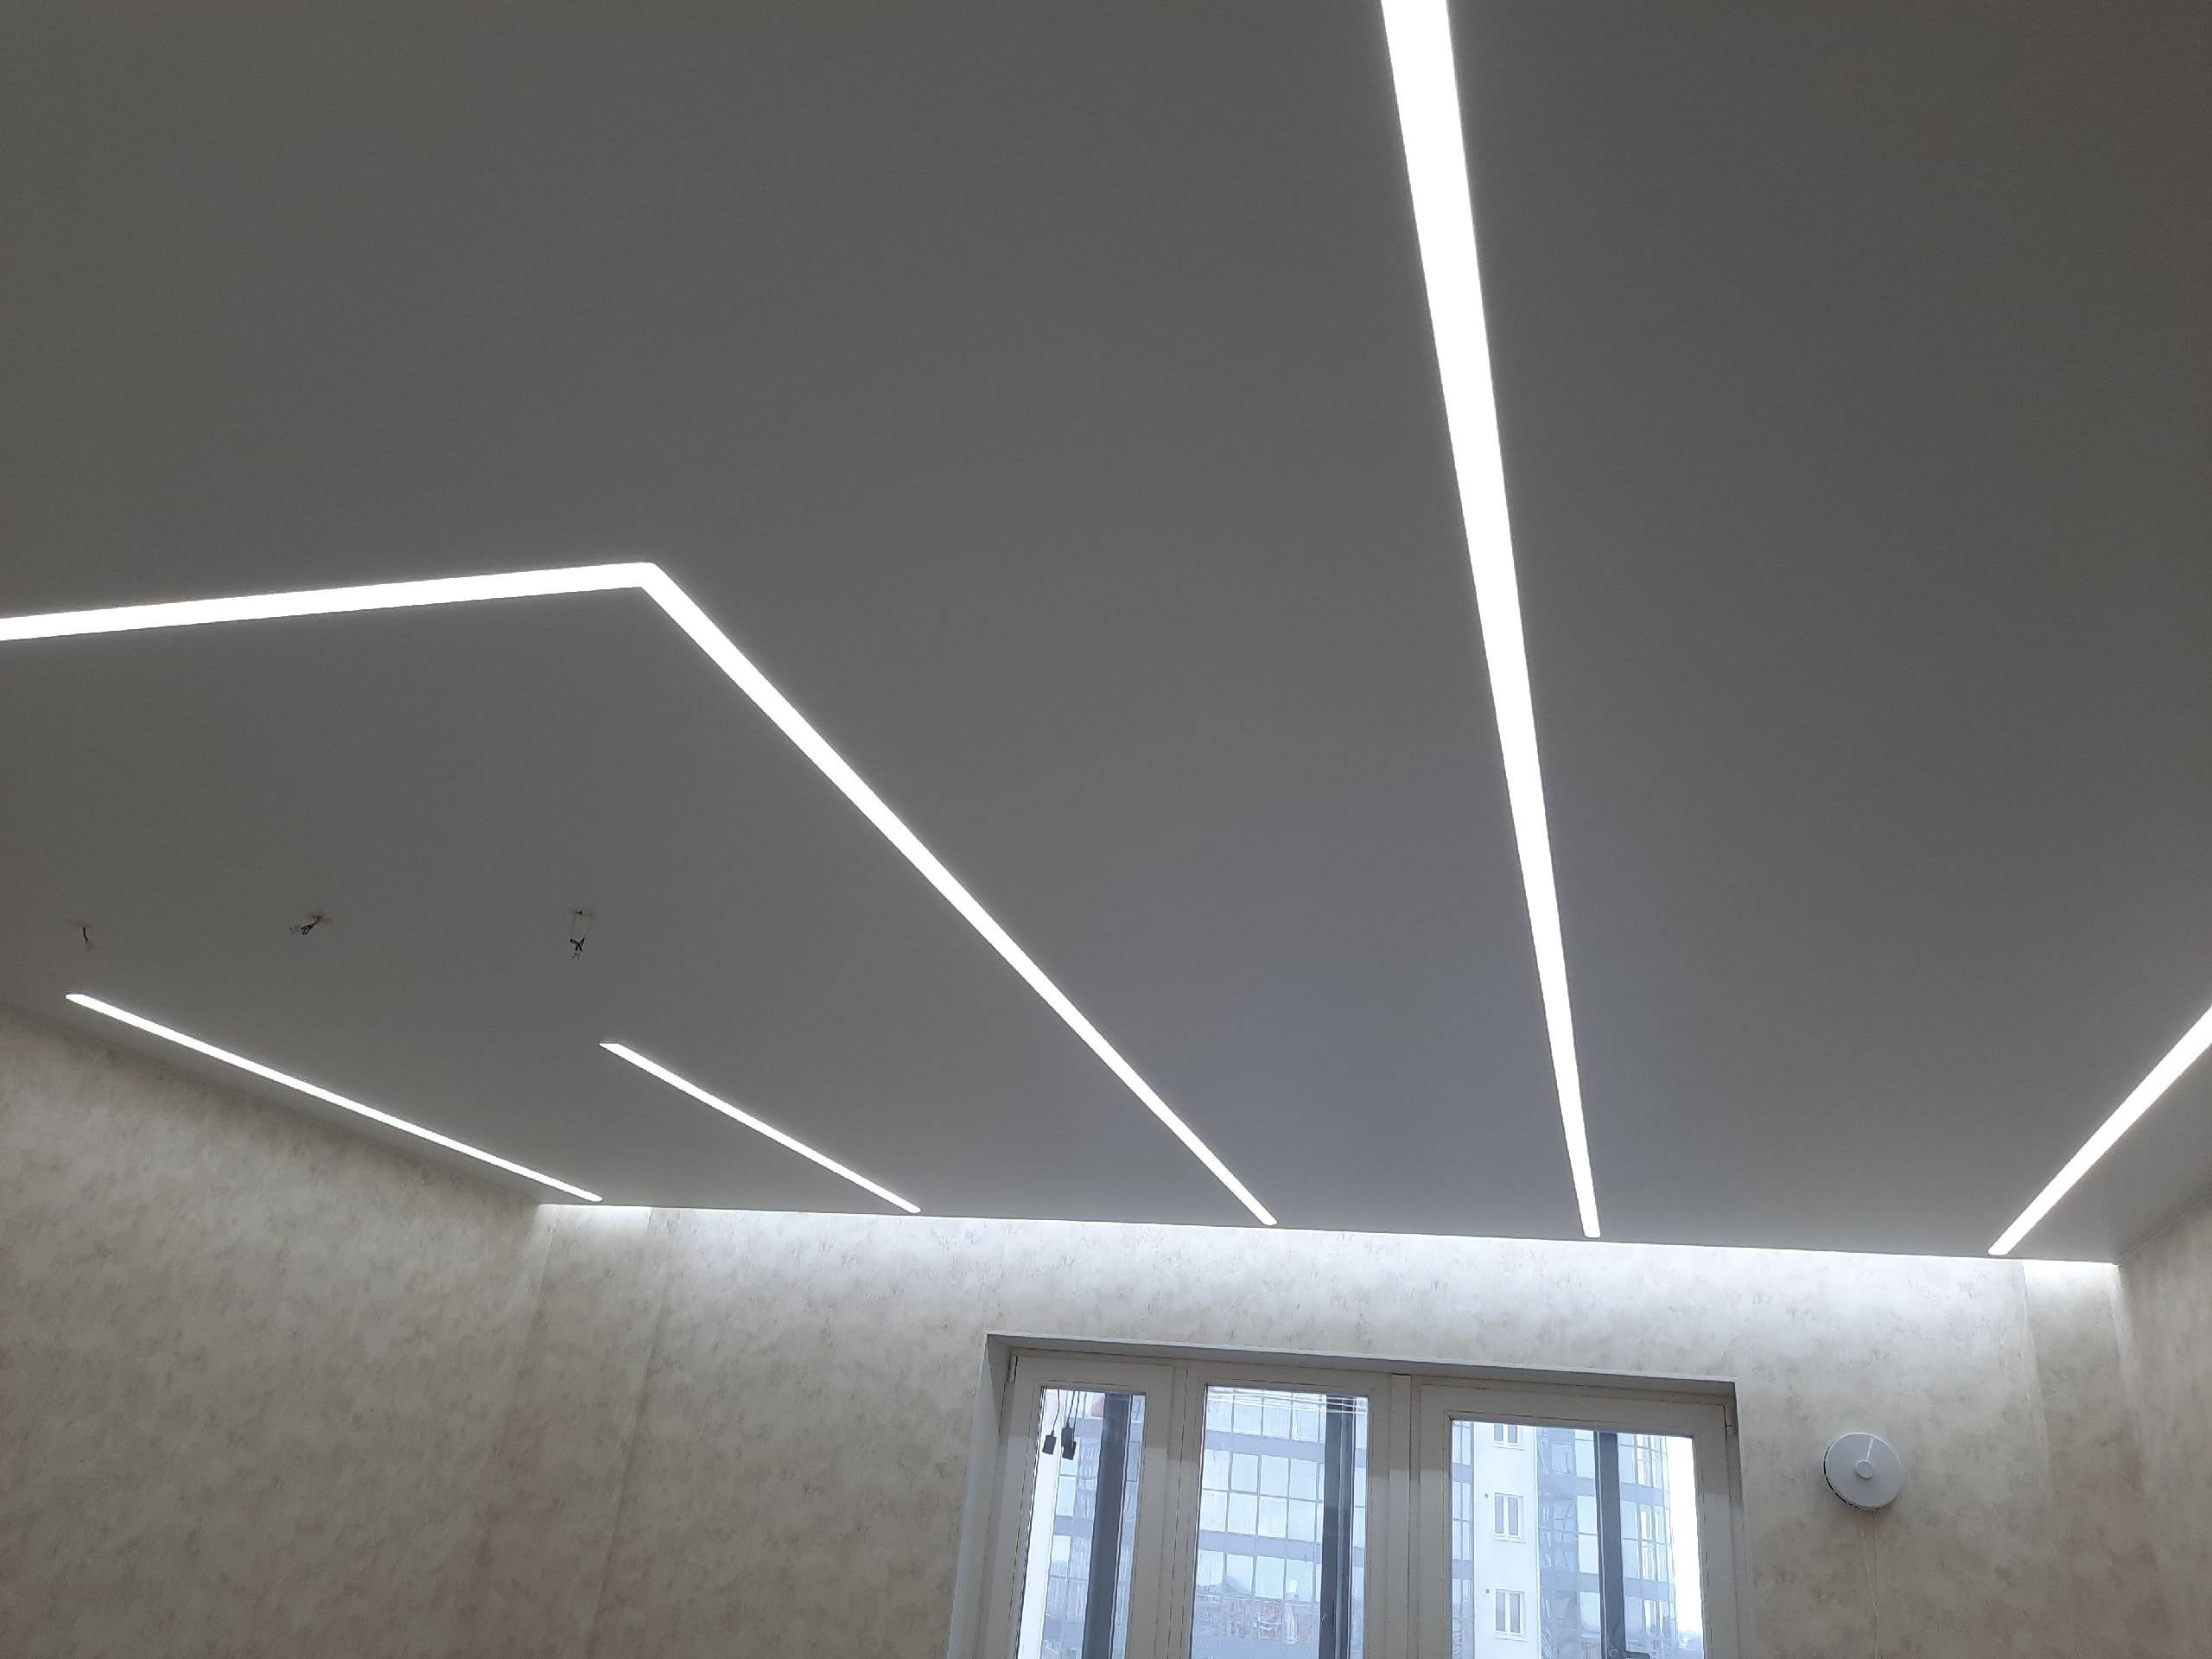 Как делают парящие световые линии на натяжном потолке